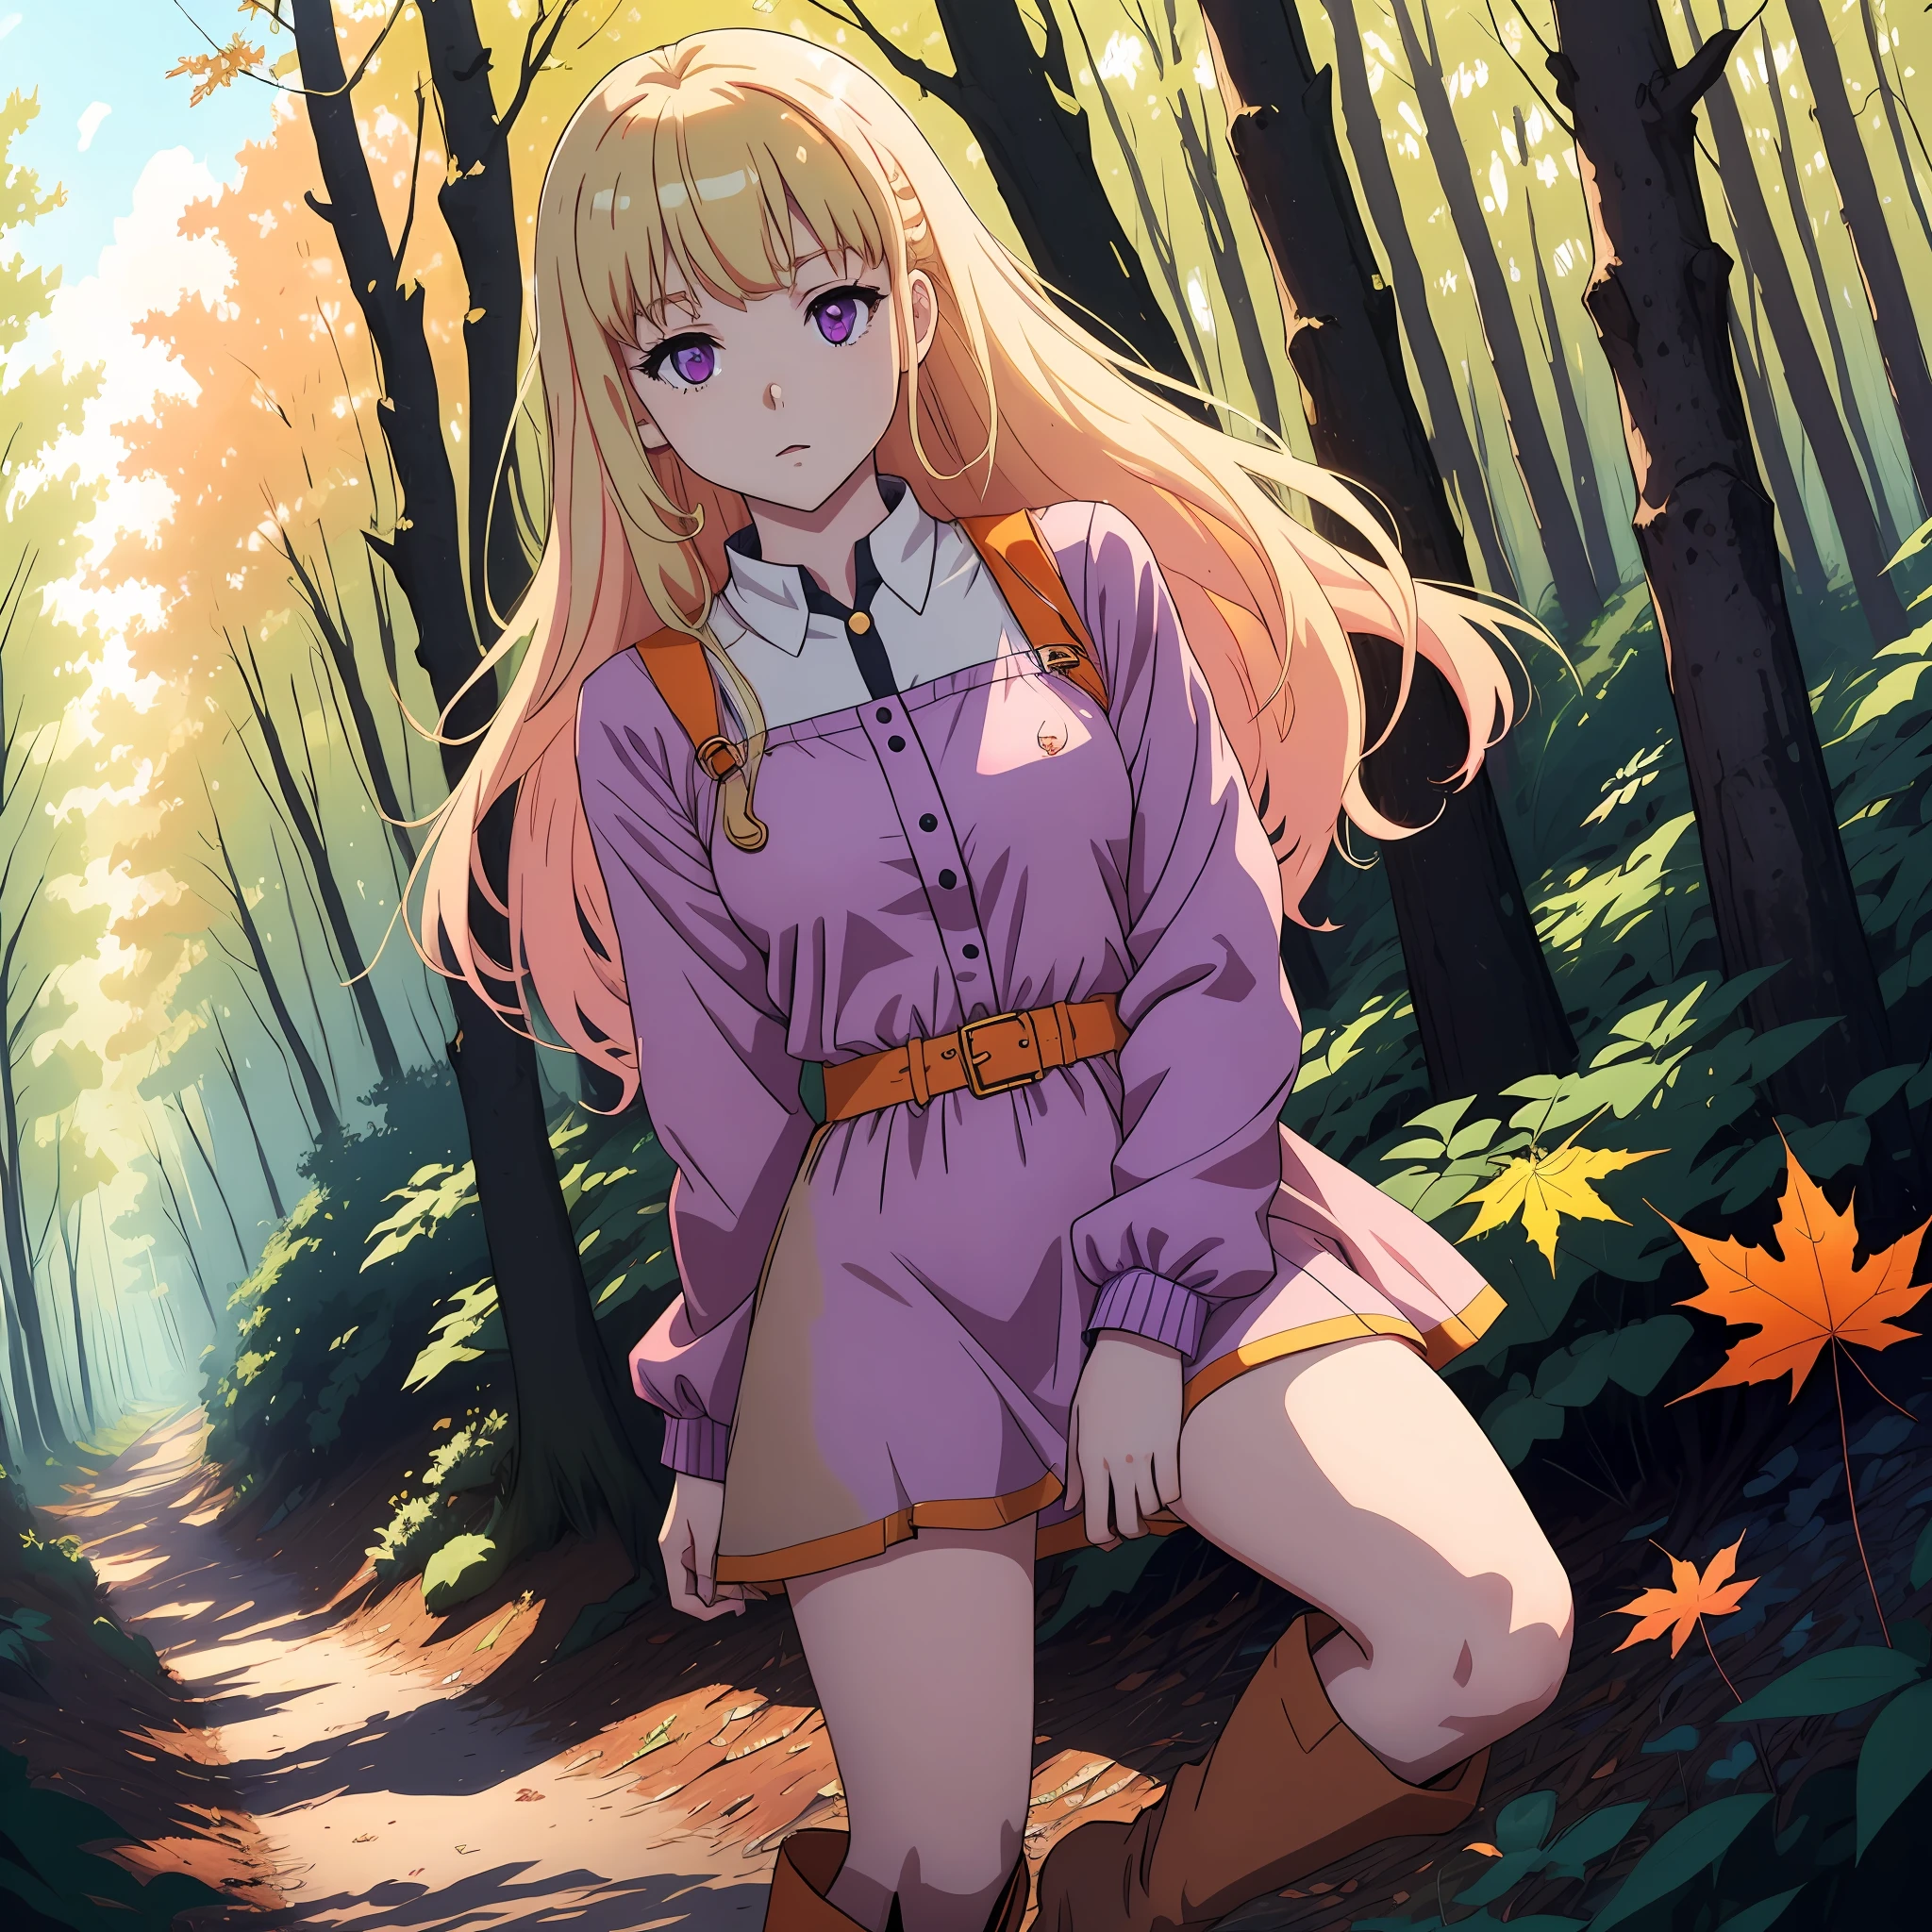 Ein hellblondes 2D-Anime-Mädchen mit blass bläulich-violetten Augen trägt ein gold-rosa kurzes Kleid mit knielangen Stiefeln in einem orangefarbenen Ahornwald unter strahlend blauem Himmel, ganz allein